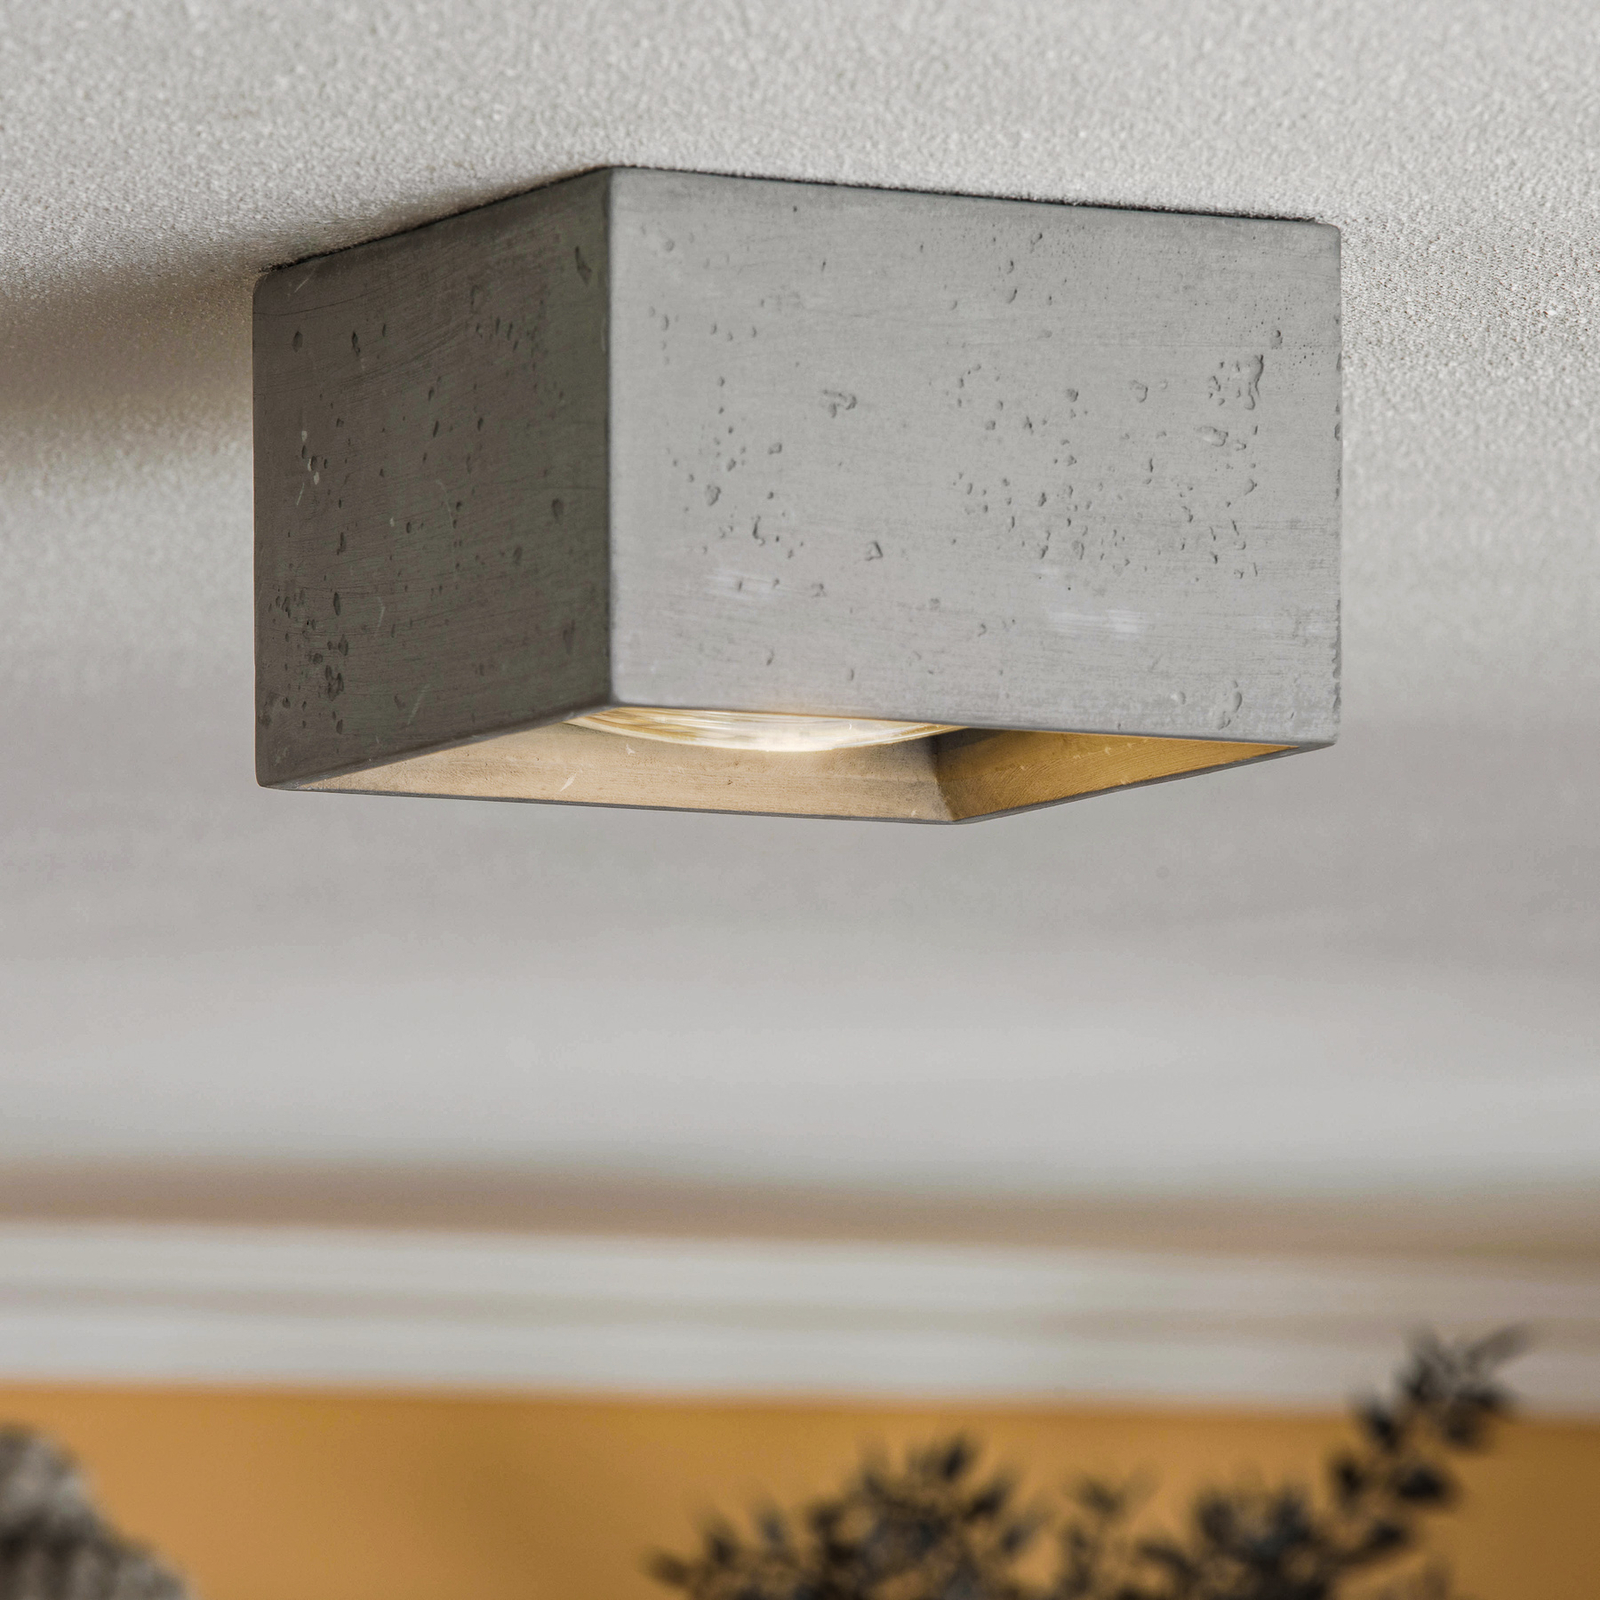 Solana ceiling spotlight concrete angular one-bulb